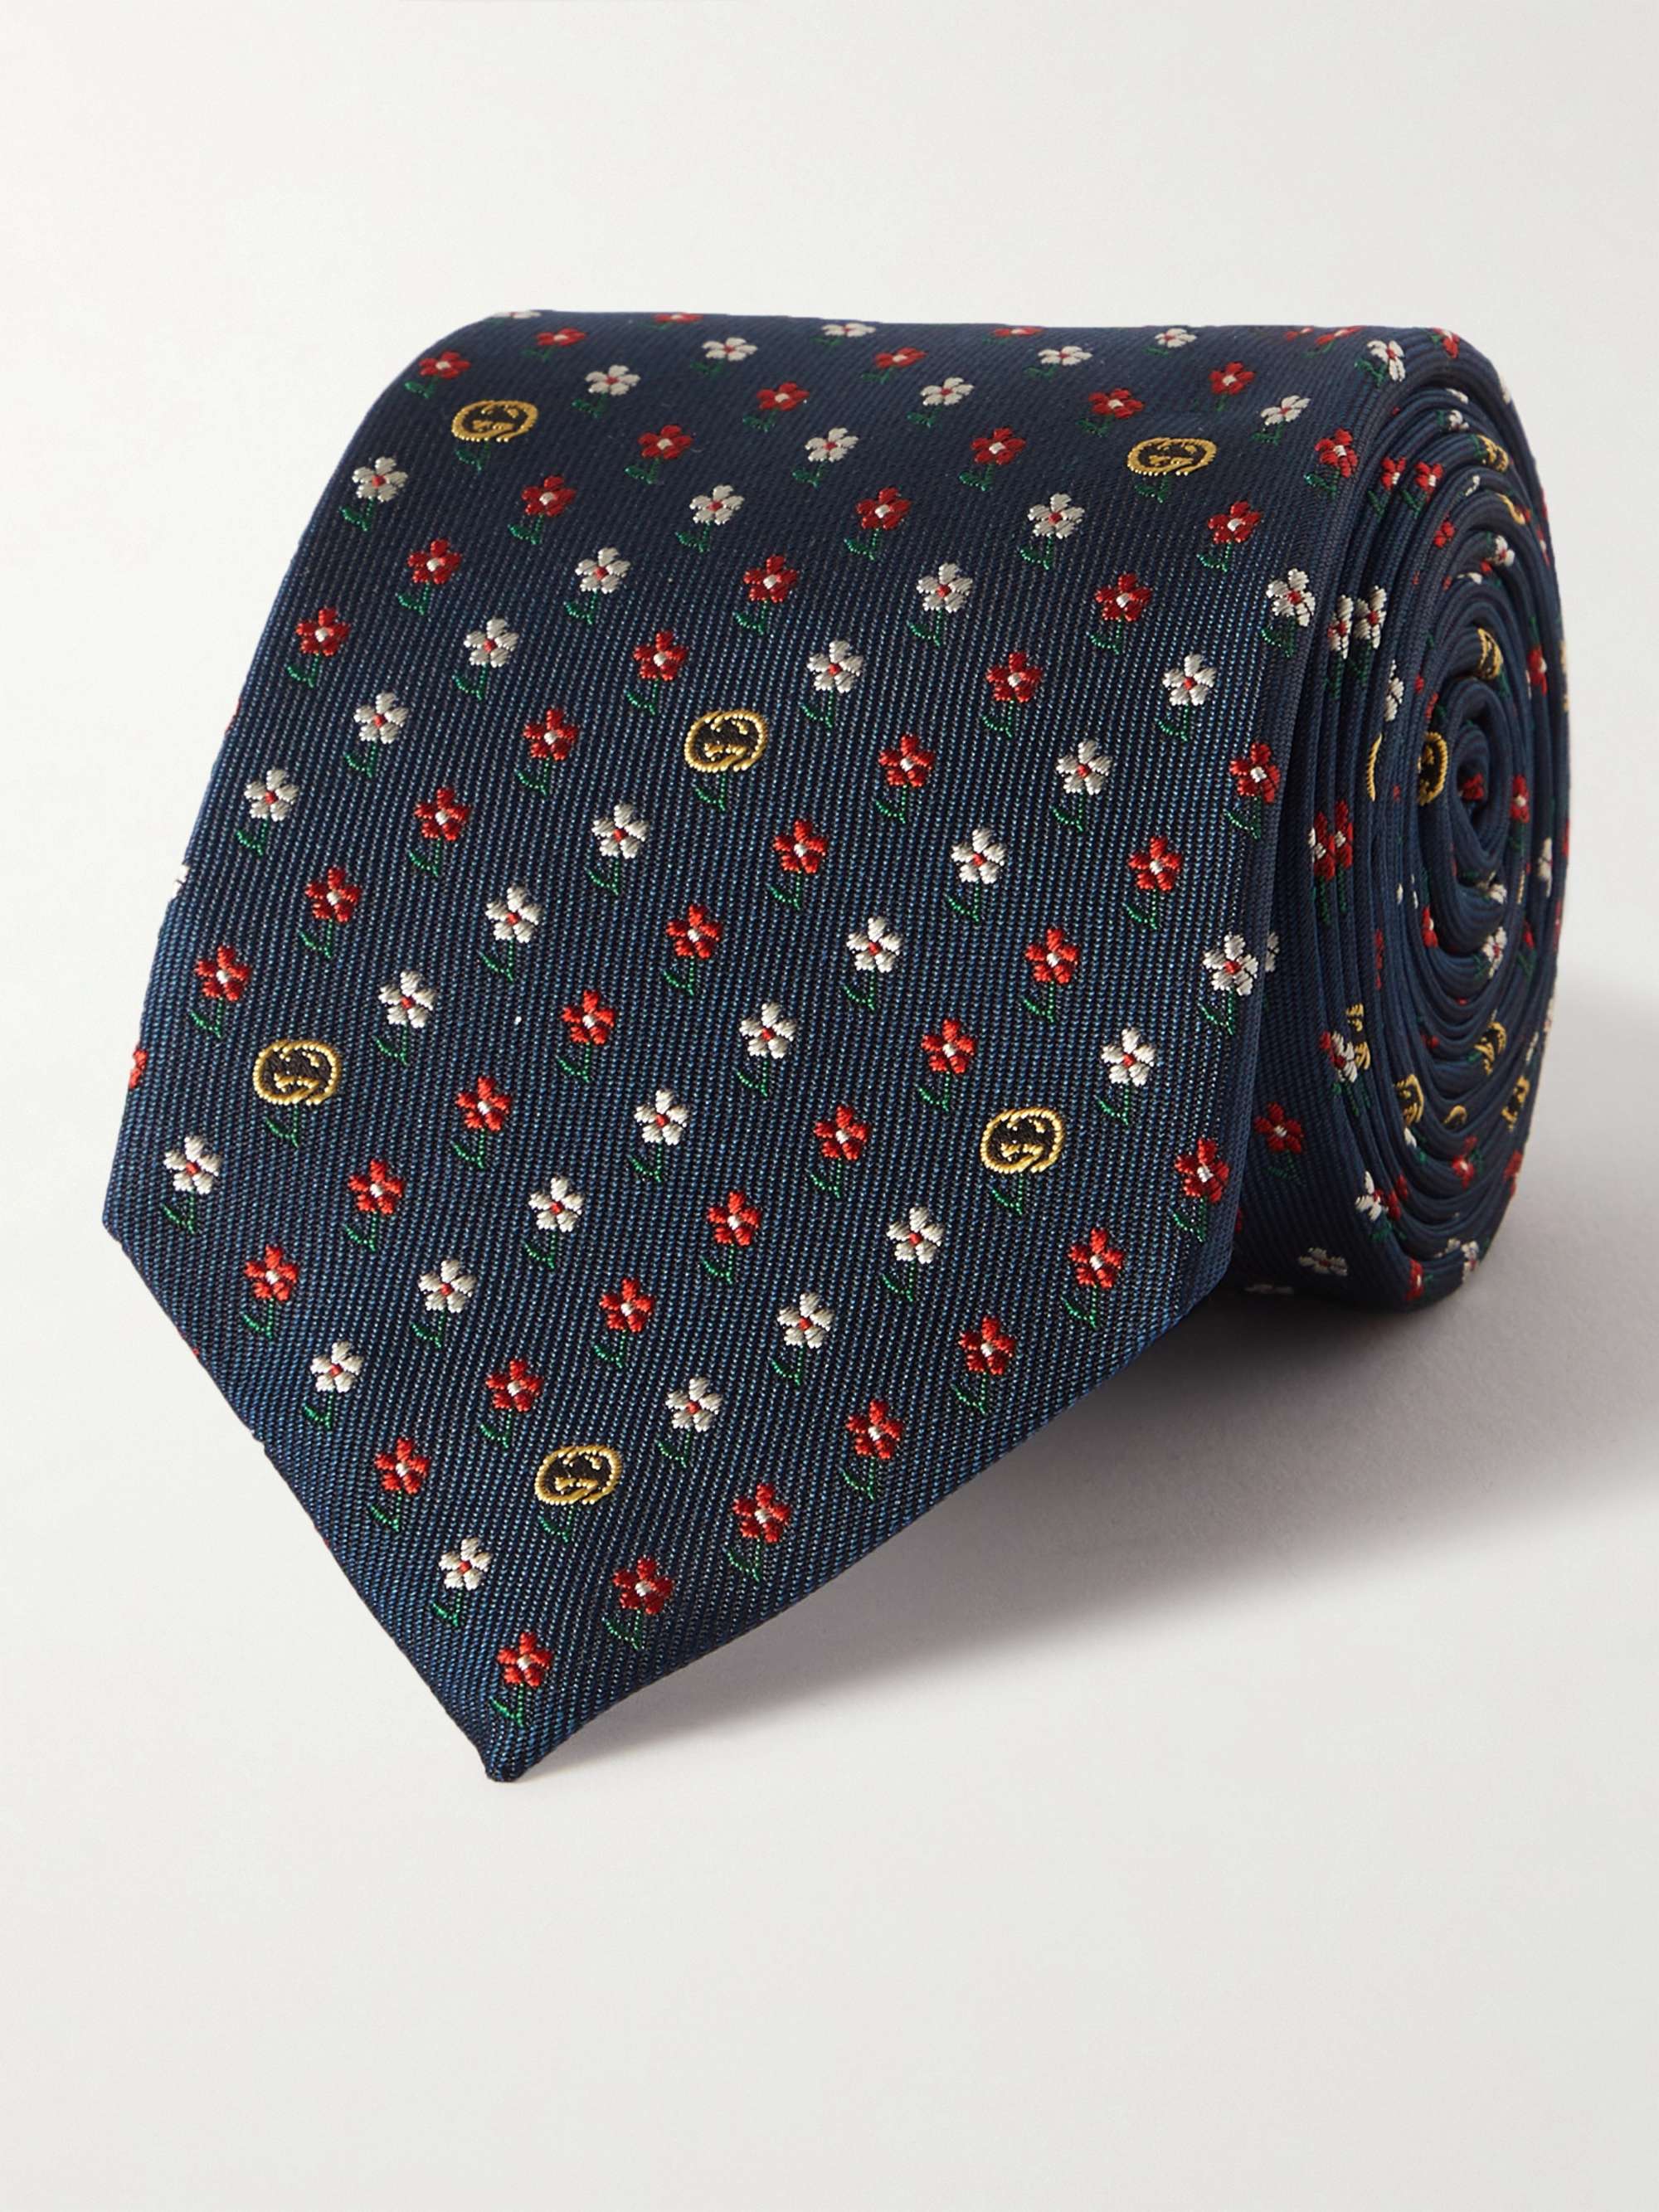 구찌 실크 자가드 넥타이 (선물 추천) Gucci 7cm Silk-Jacquard Tie,Blue